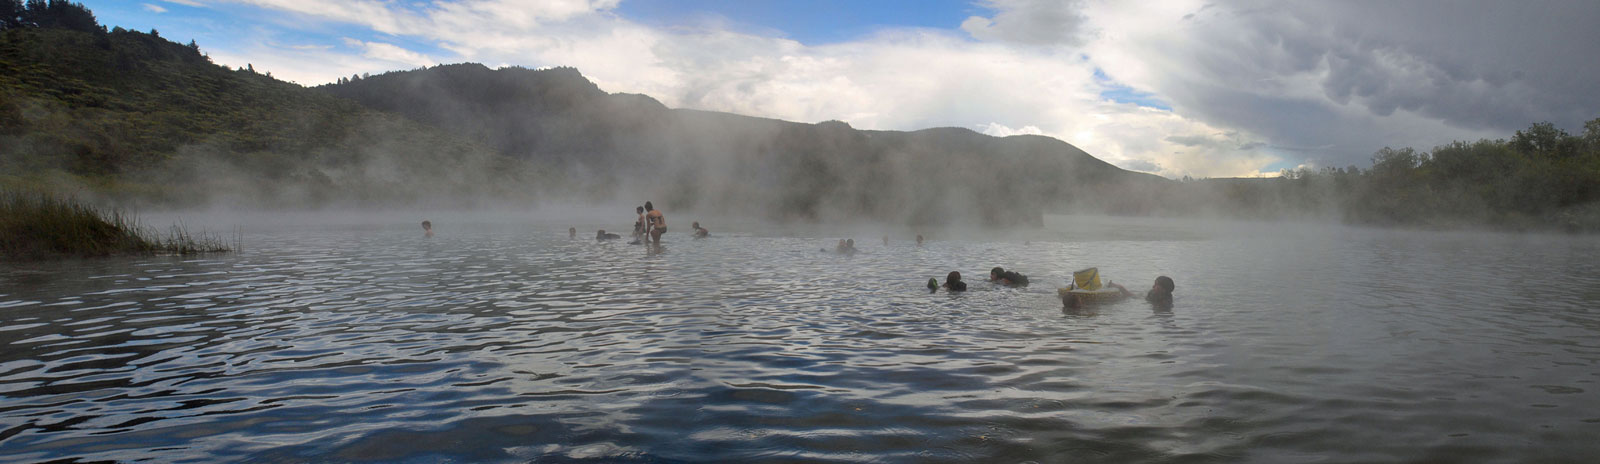 Mount Maunganui Hot Salt Water Pools - NZHotPools.co.nz 